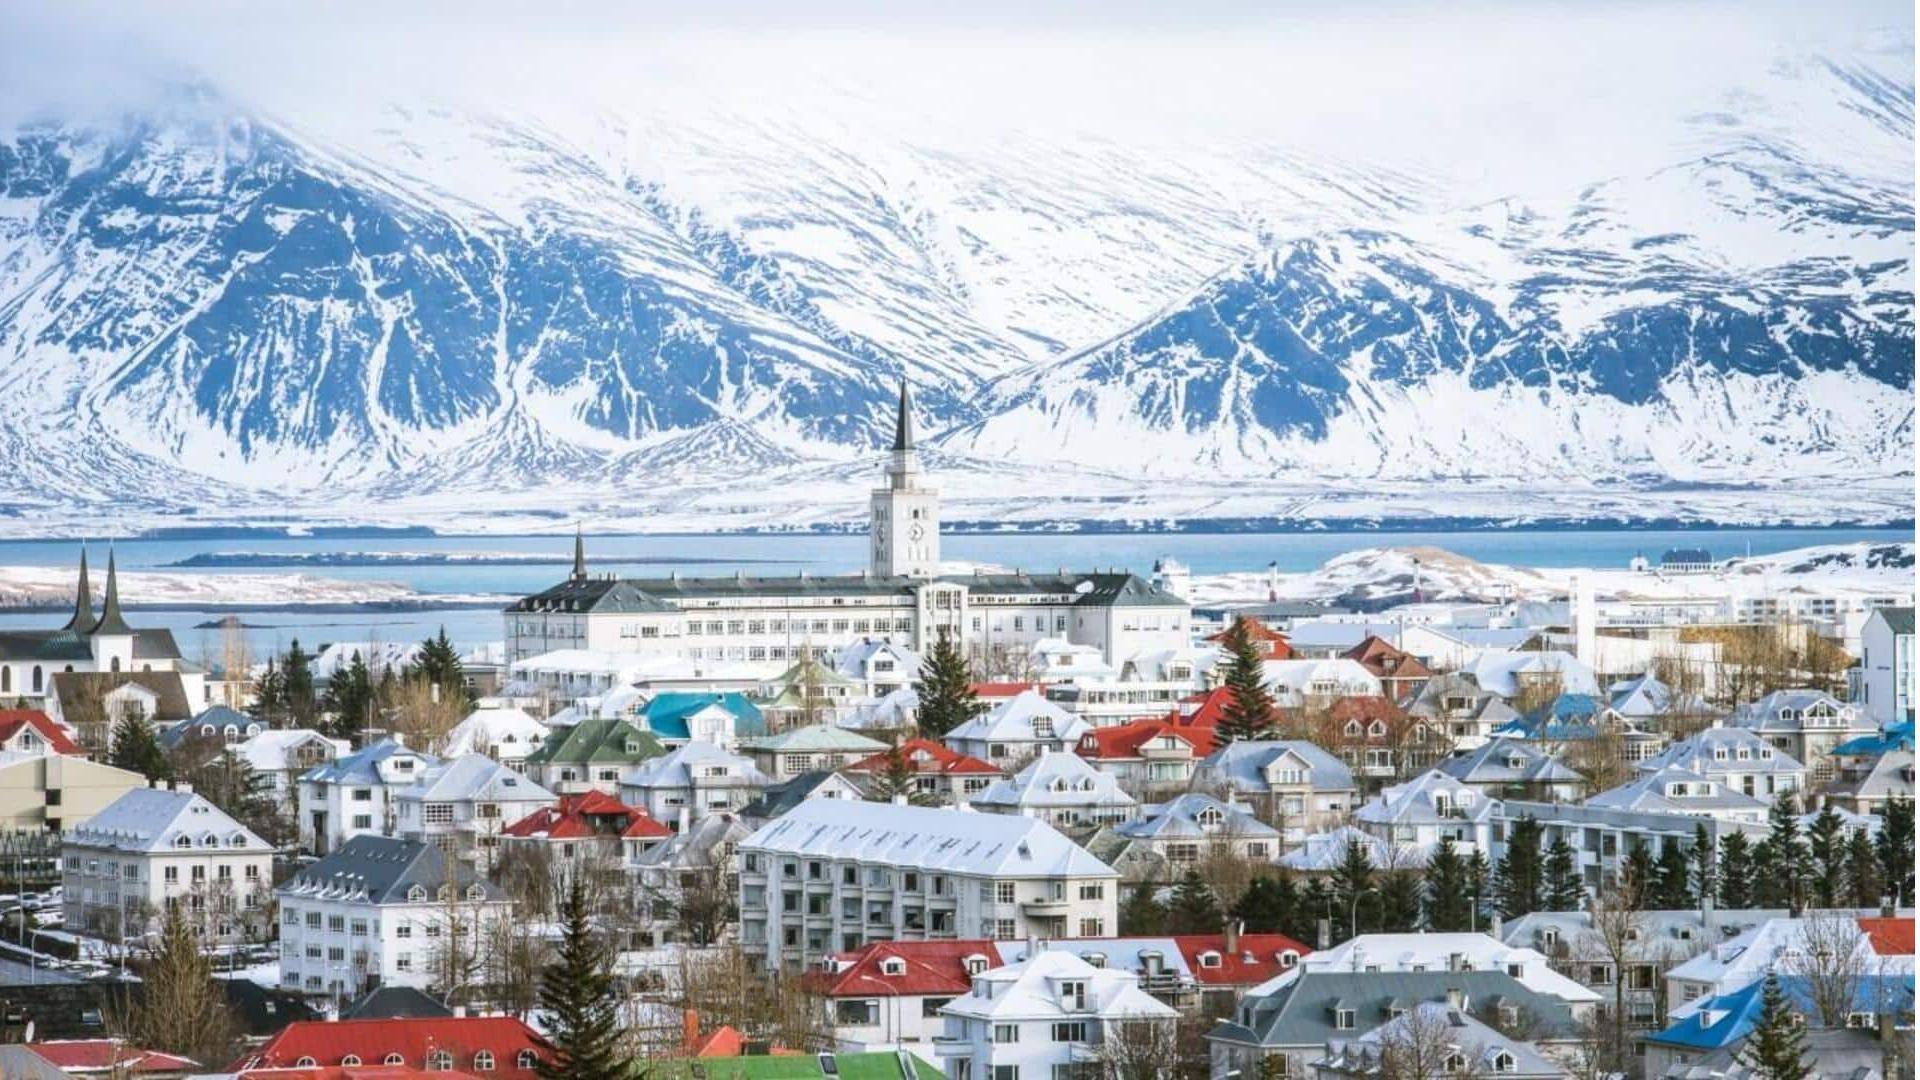 Petualangan yang memesona di Reykjavik, Islandia: Hal-hal menyenangkan untuk dilakukan